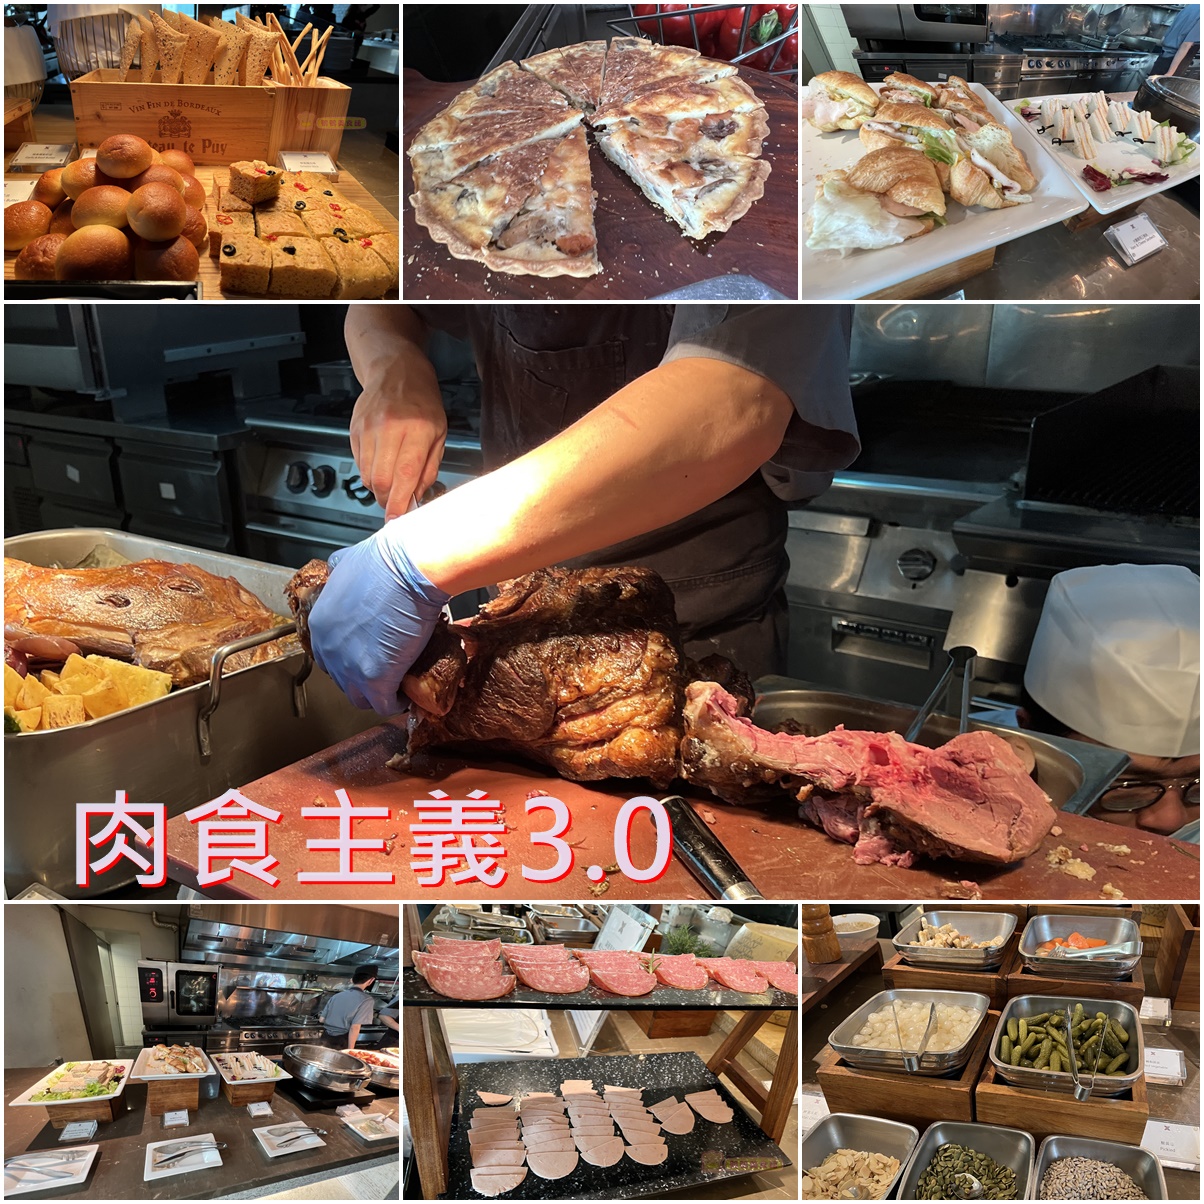 網站近期文章：(4)台北信義區。寒舍艾麗LA FARFALLA 義式餐廳~肉食主義3.0假日下午茶牛排吃到飽，羊排第一名